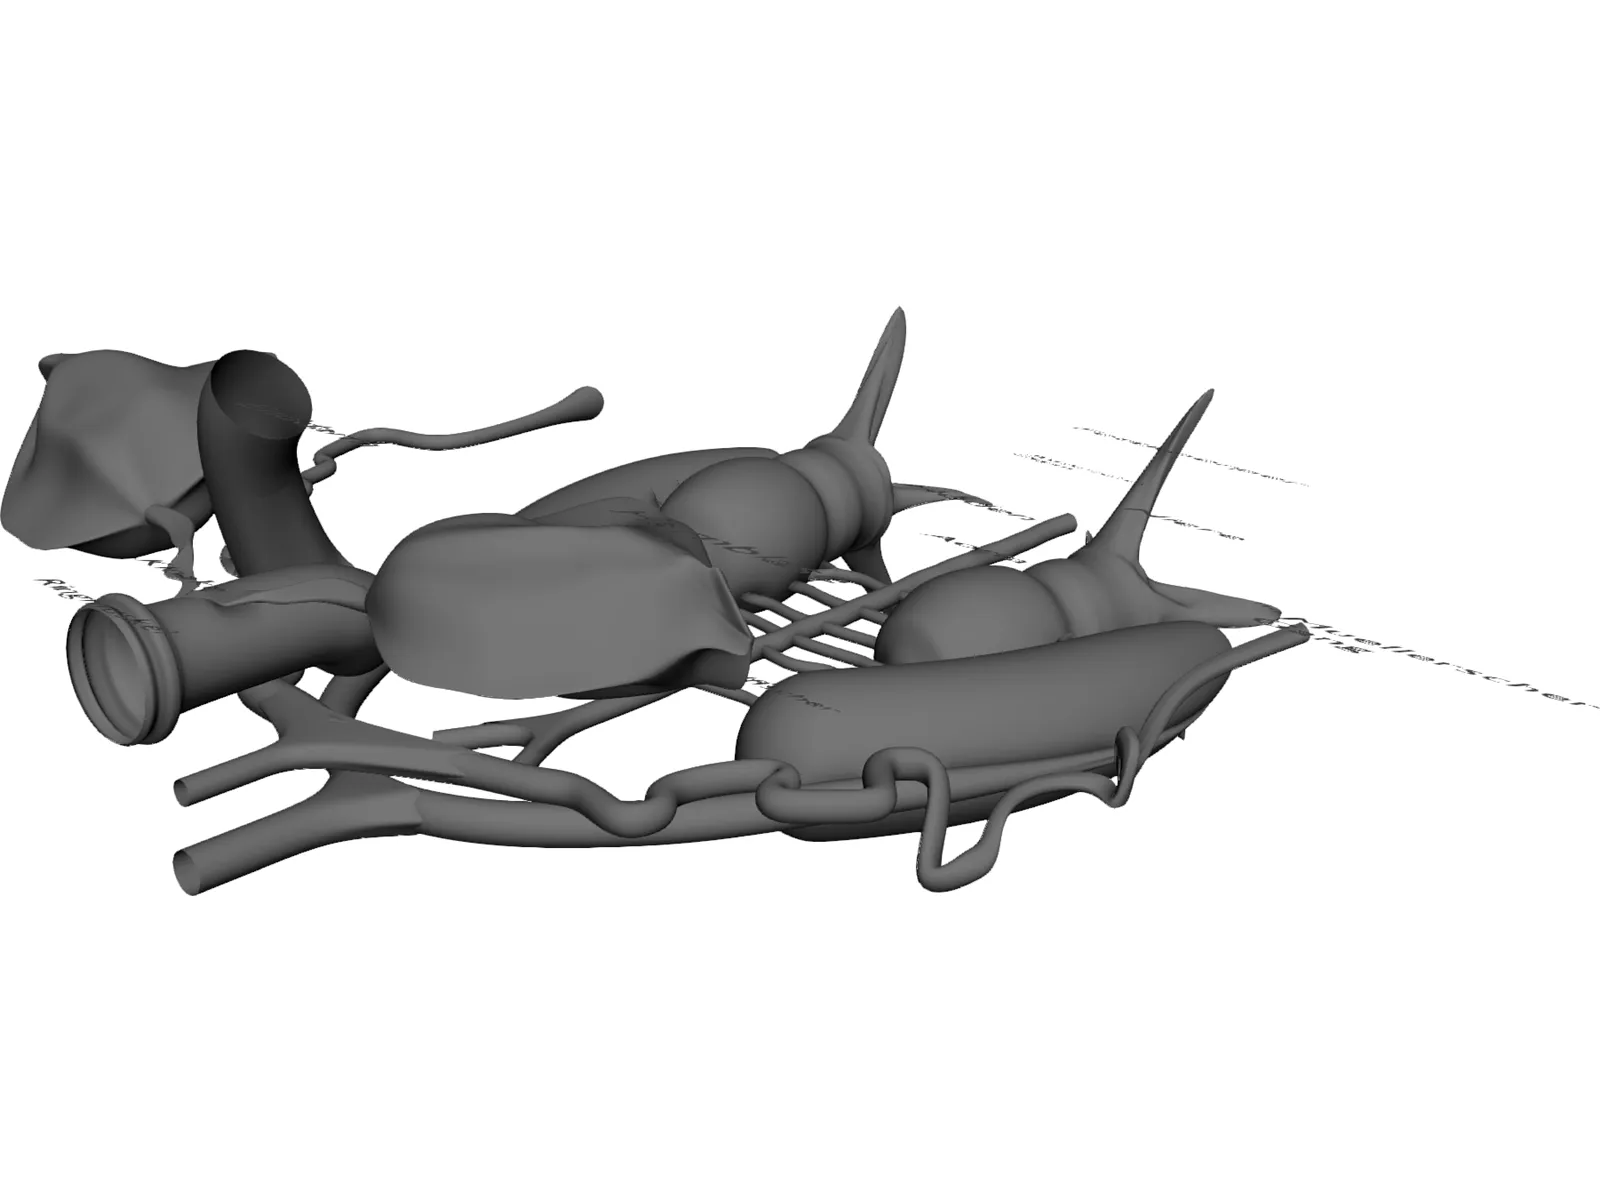 Frog Male Anatomy 3D Model